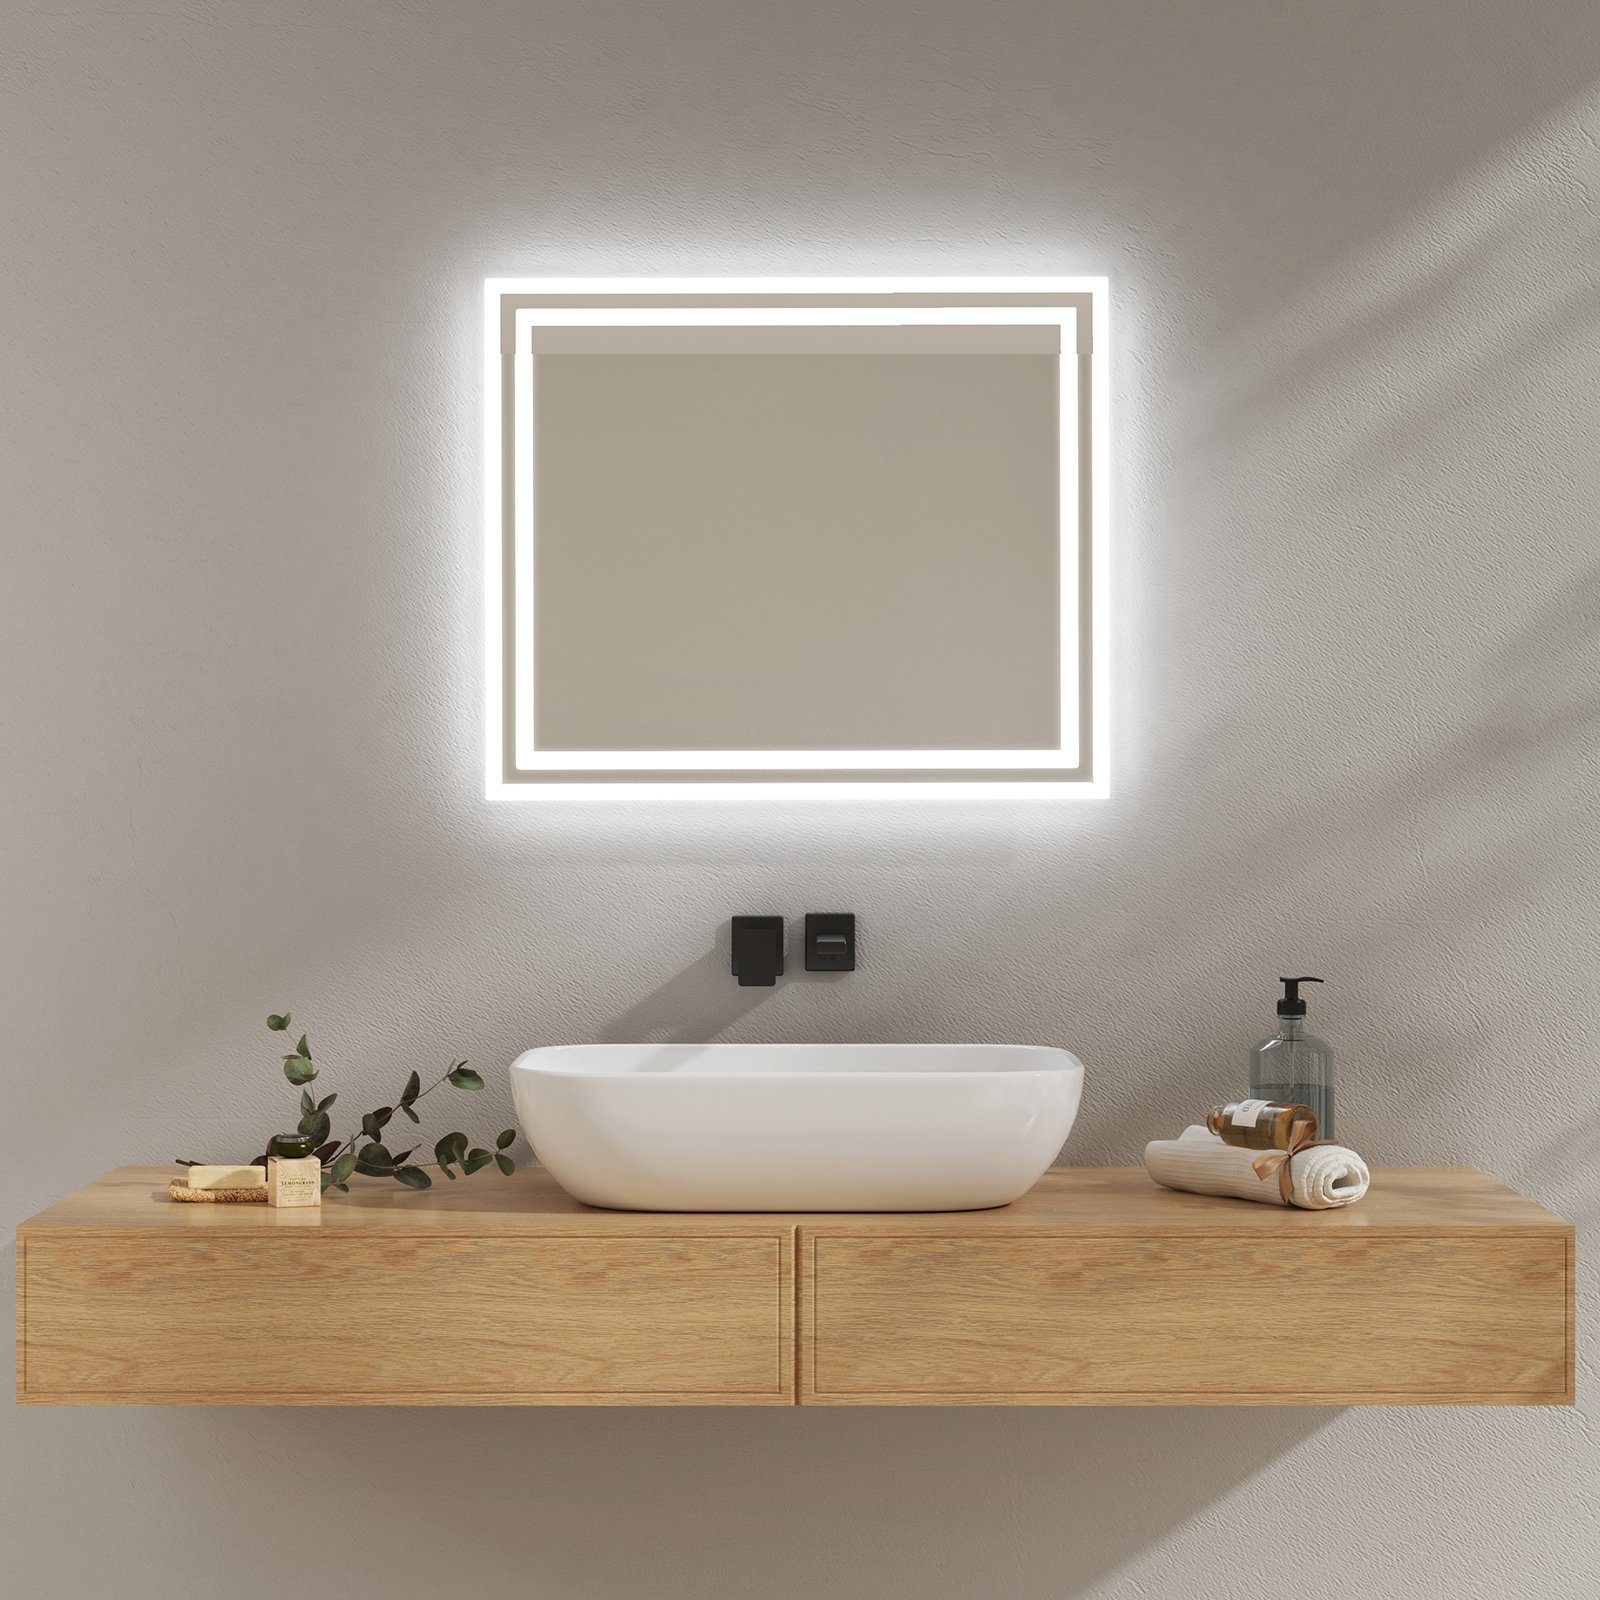 Beleuchtung mit Badspiegel Farben EMKE Druckknopfschalter 2 Badspiegel Lichts, Badezimmerspiegel Wandspiegel, LED des Beschlagfrei,